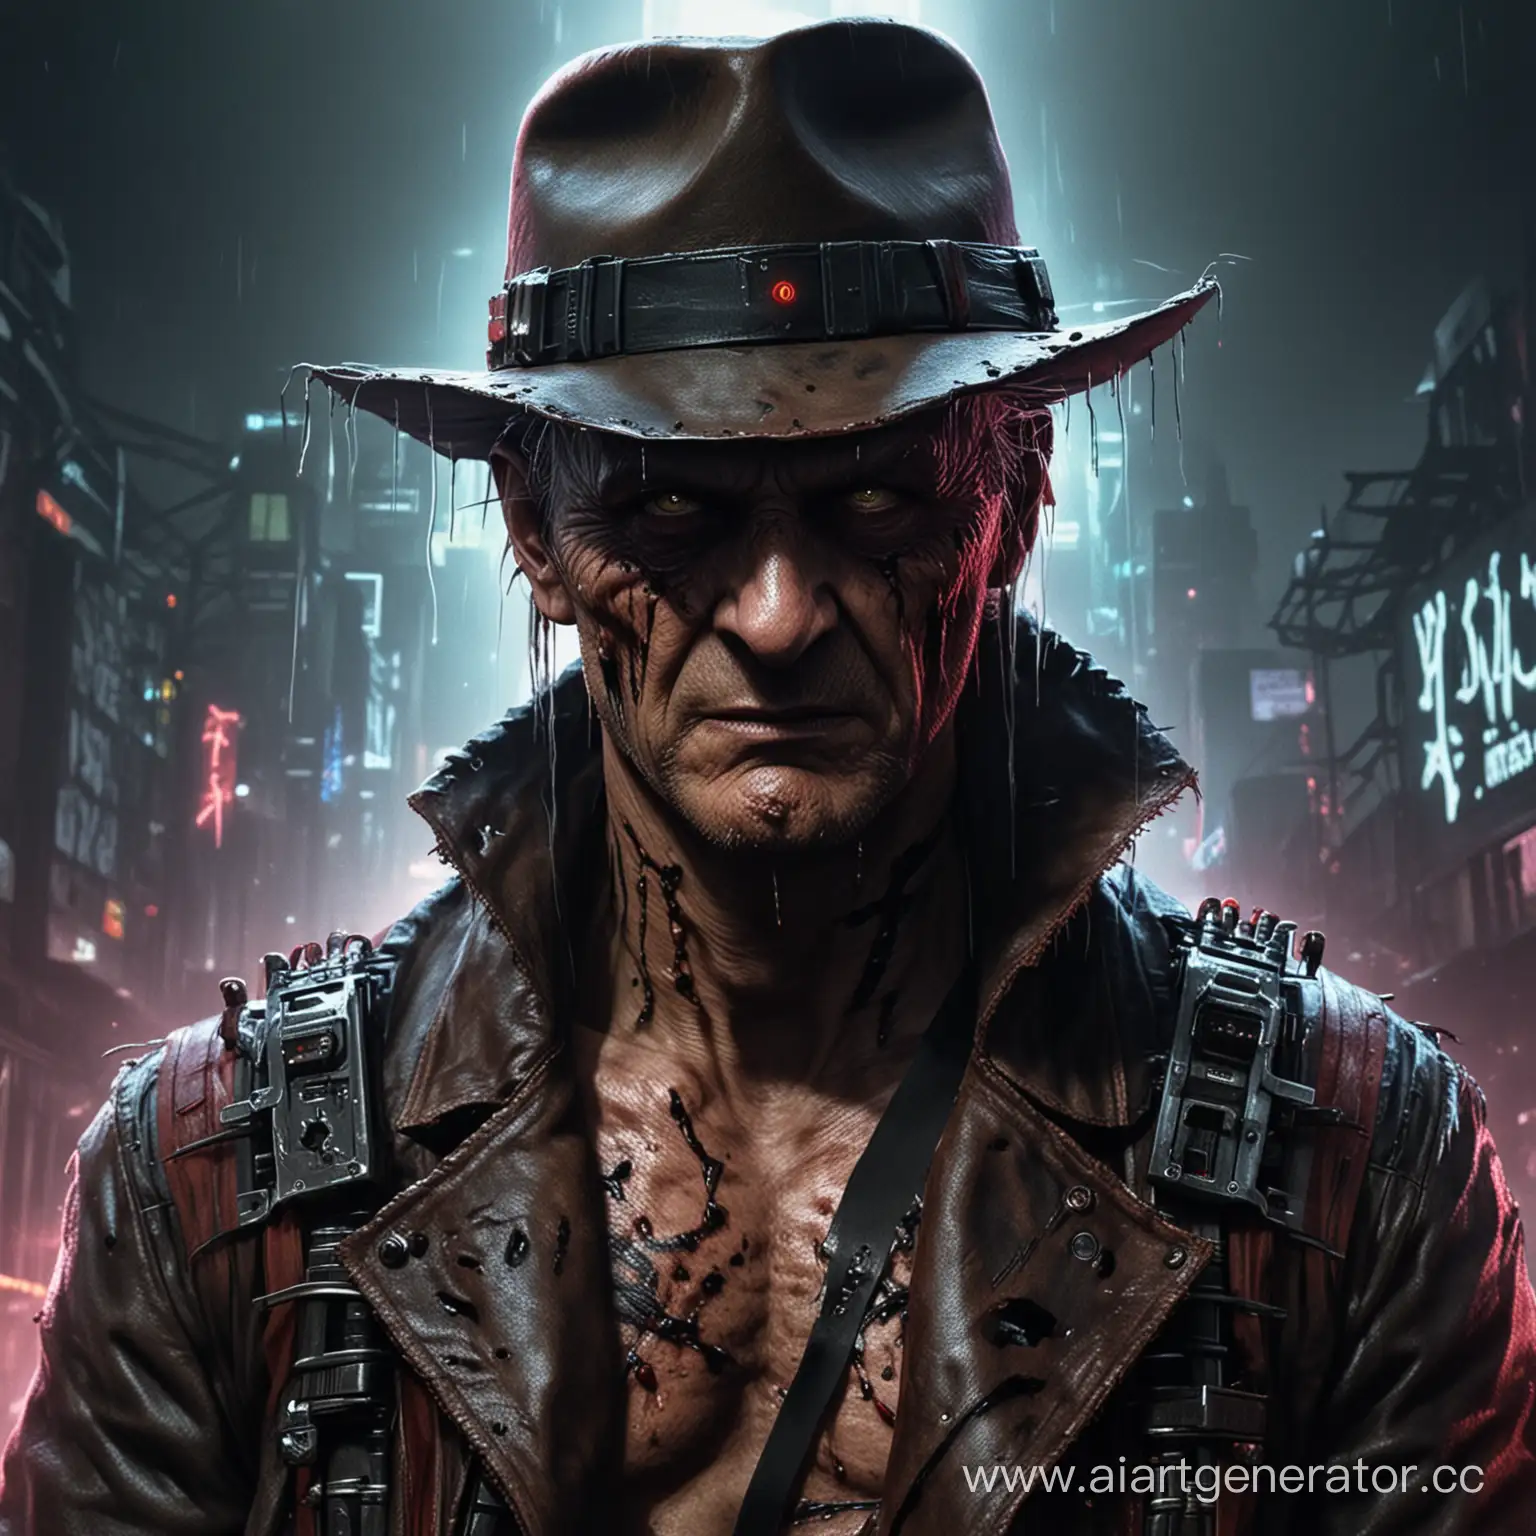 Freddy-Krueger-Cyberpunk-Art-Futuristic-Nightmare-Stalker-in-a-Dystopian-Realm